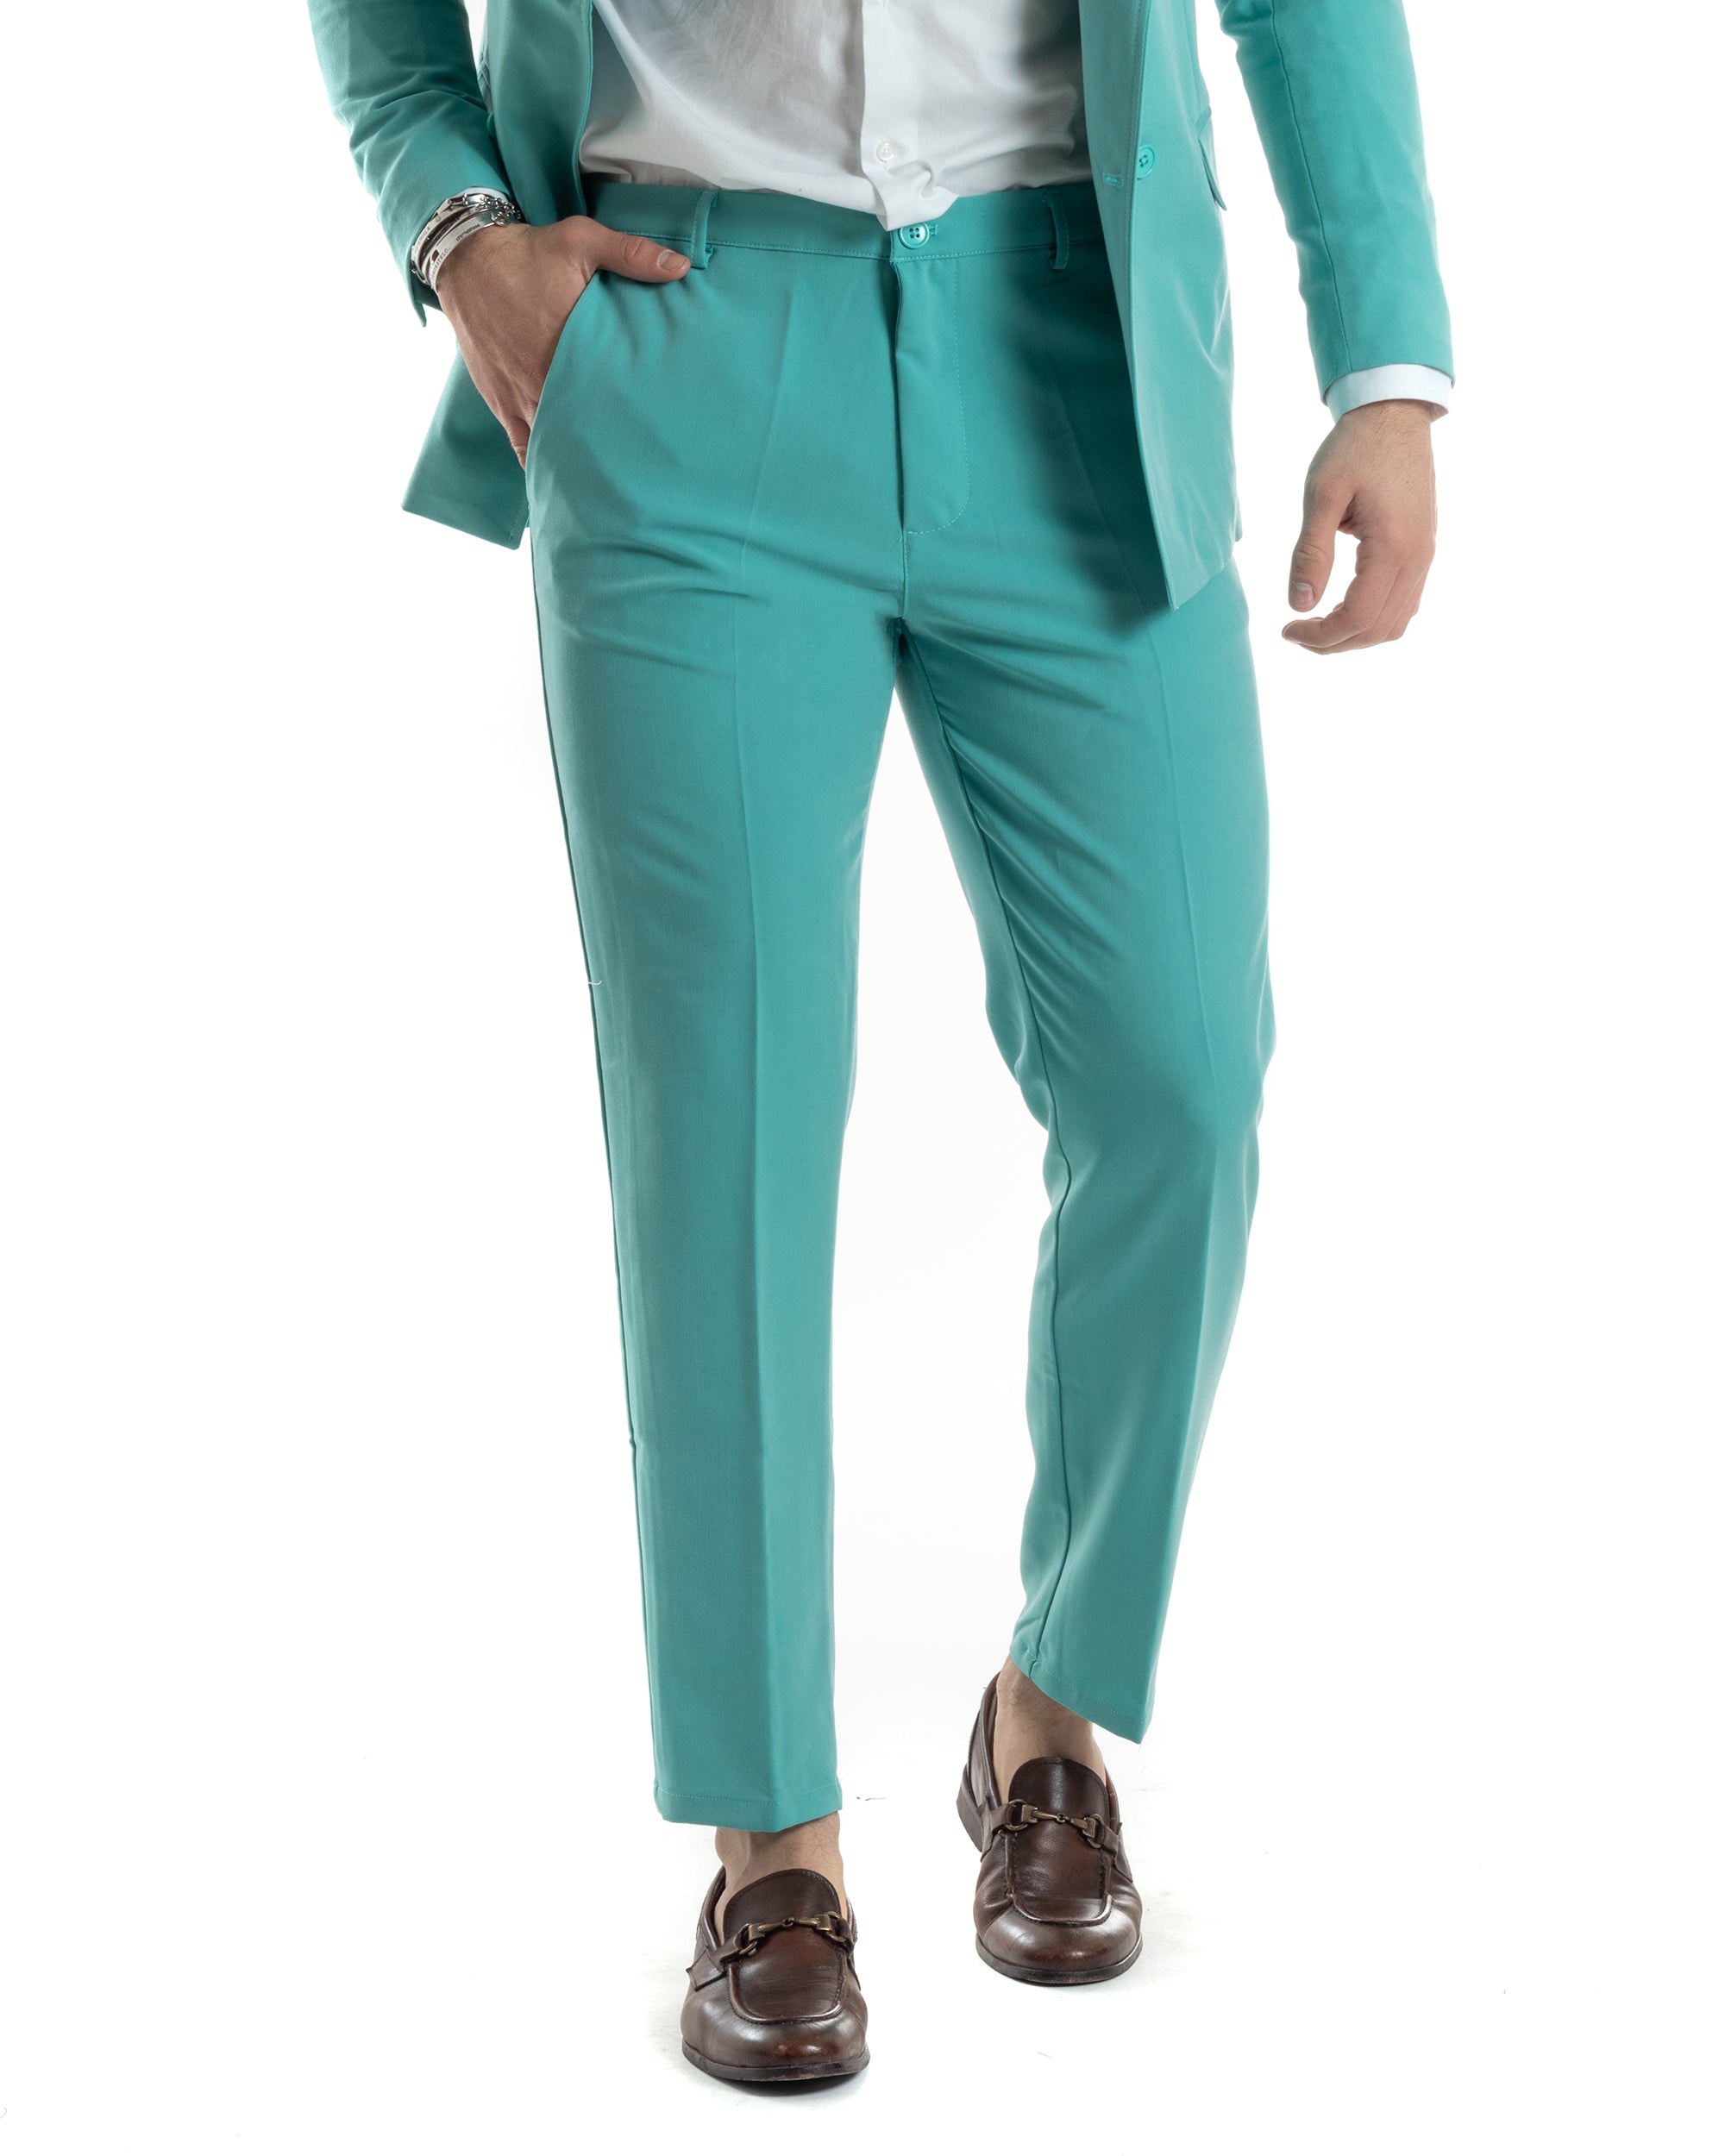 Abito Uomo Doppiopetto Vestito Completo Giacca Pantaloni Verde Acqua Tinta Unita Elegante Casual GIOSAL-AE1040A